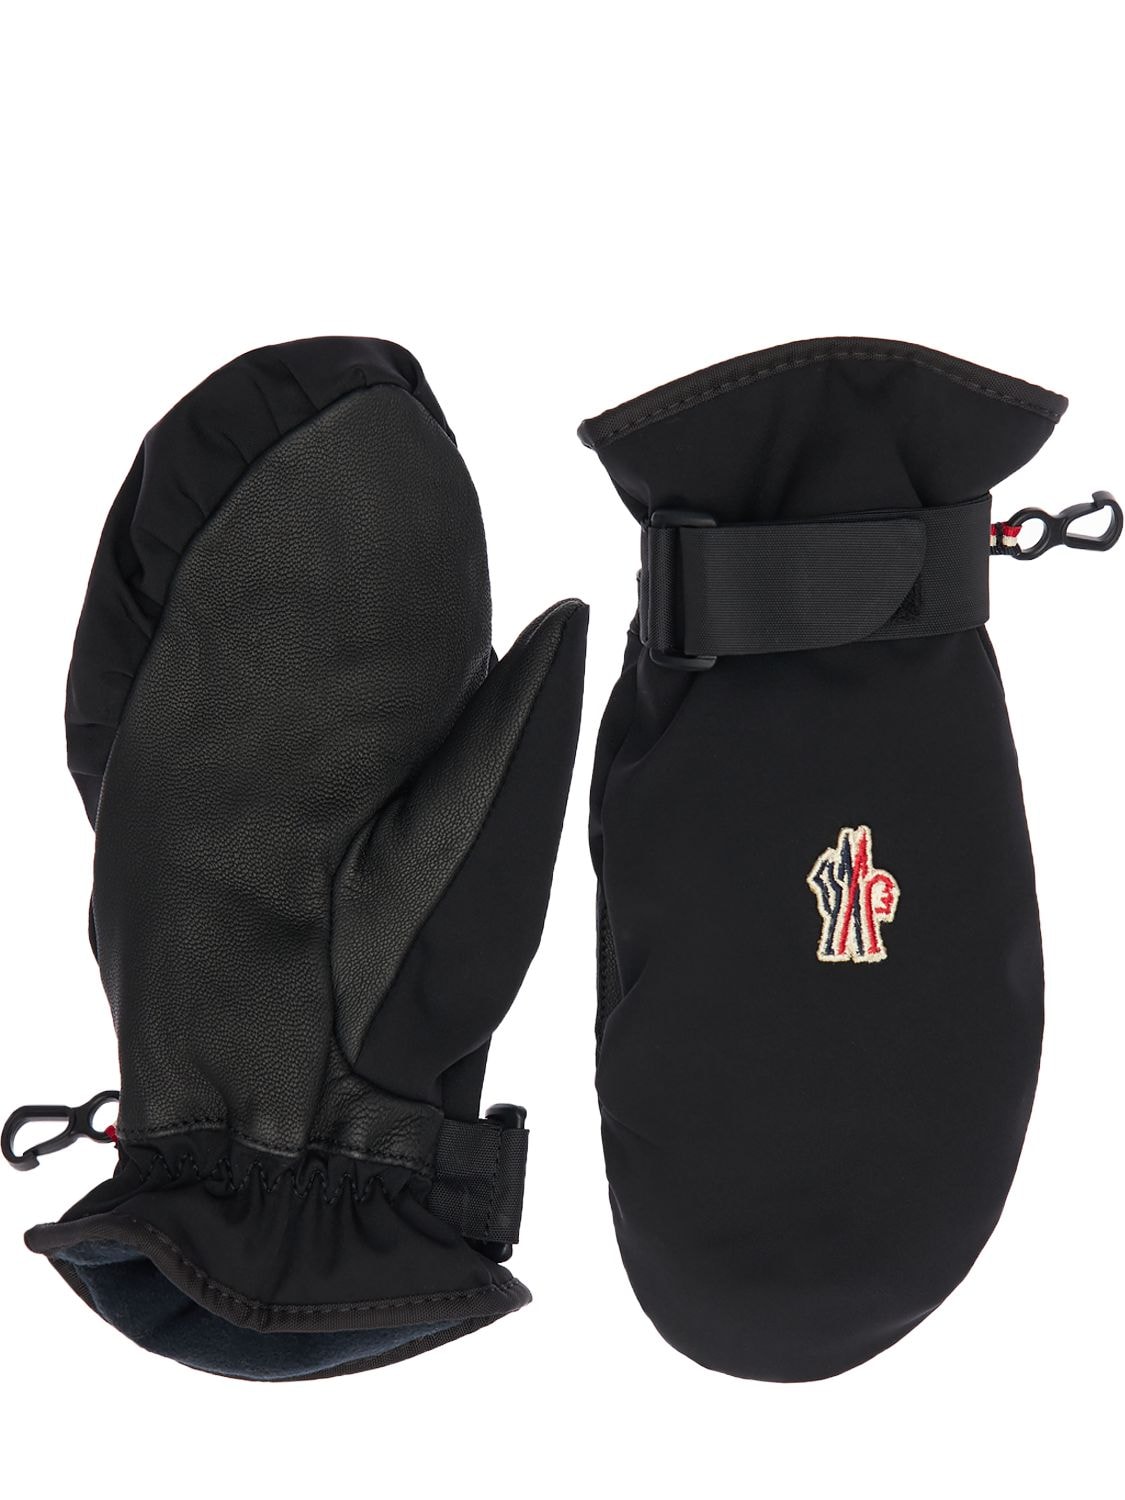 Moncler Grenoble Babies' Tech Nylon & Leather Ski Gloves In Black